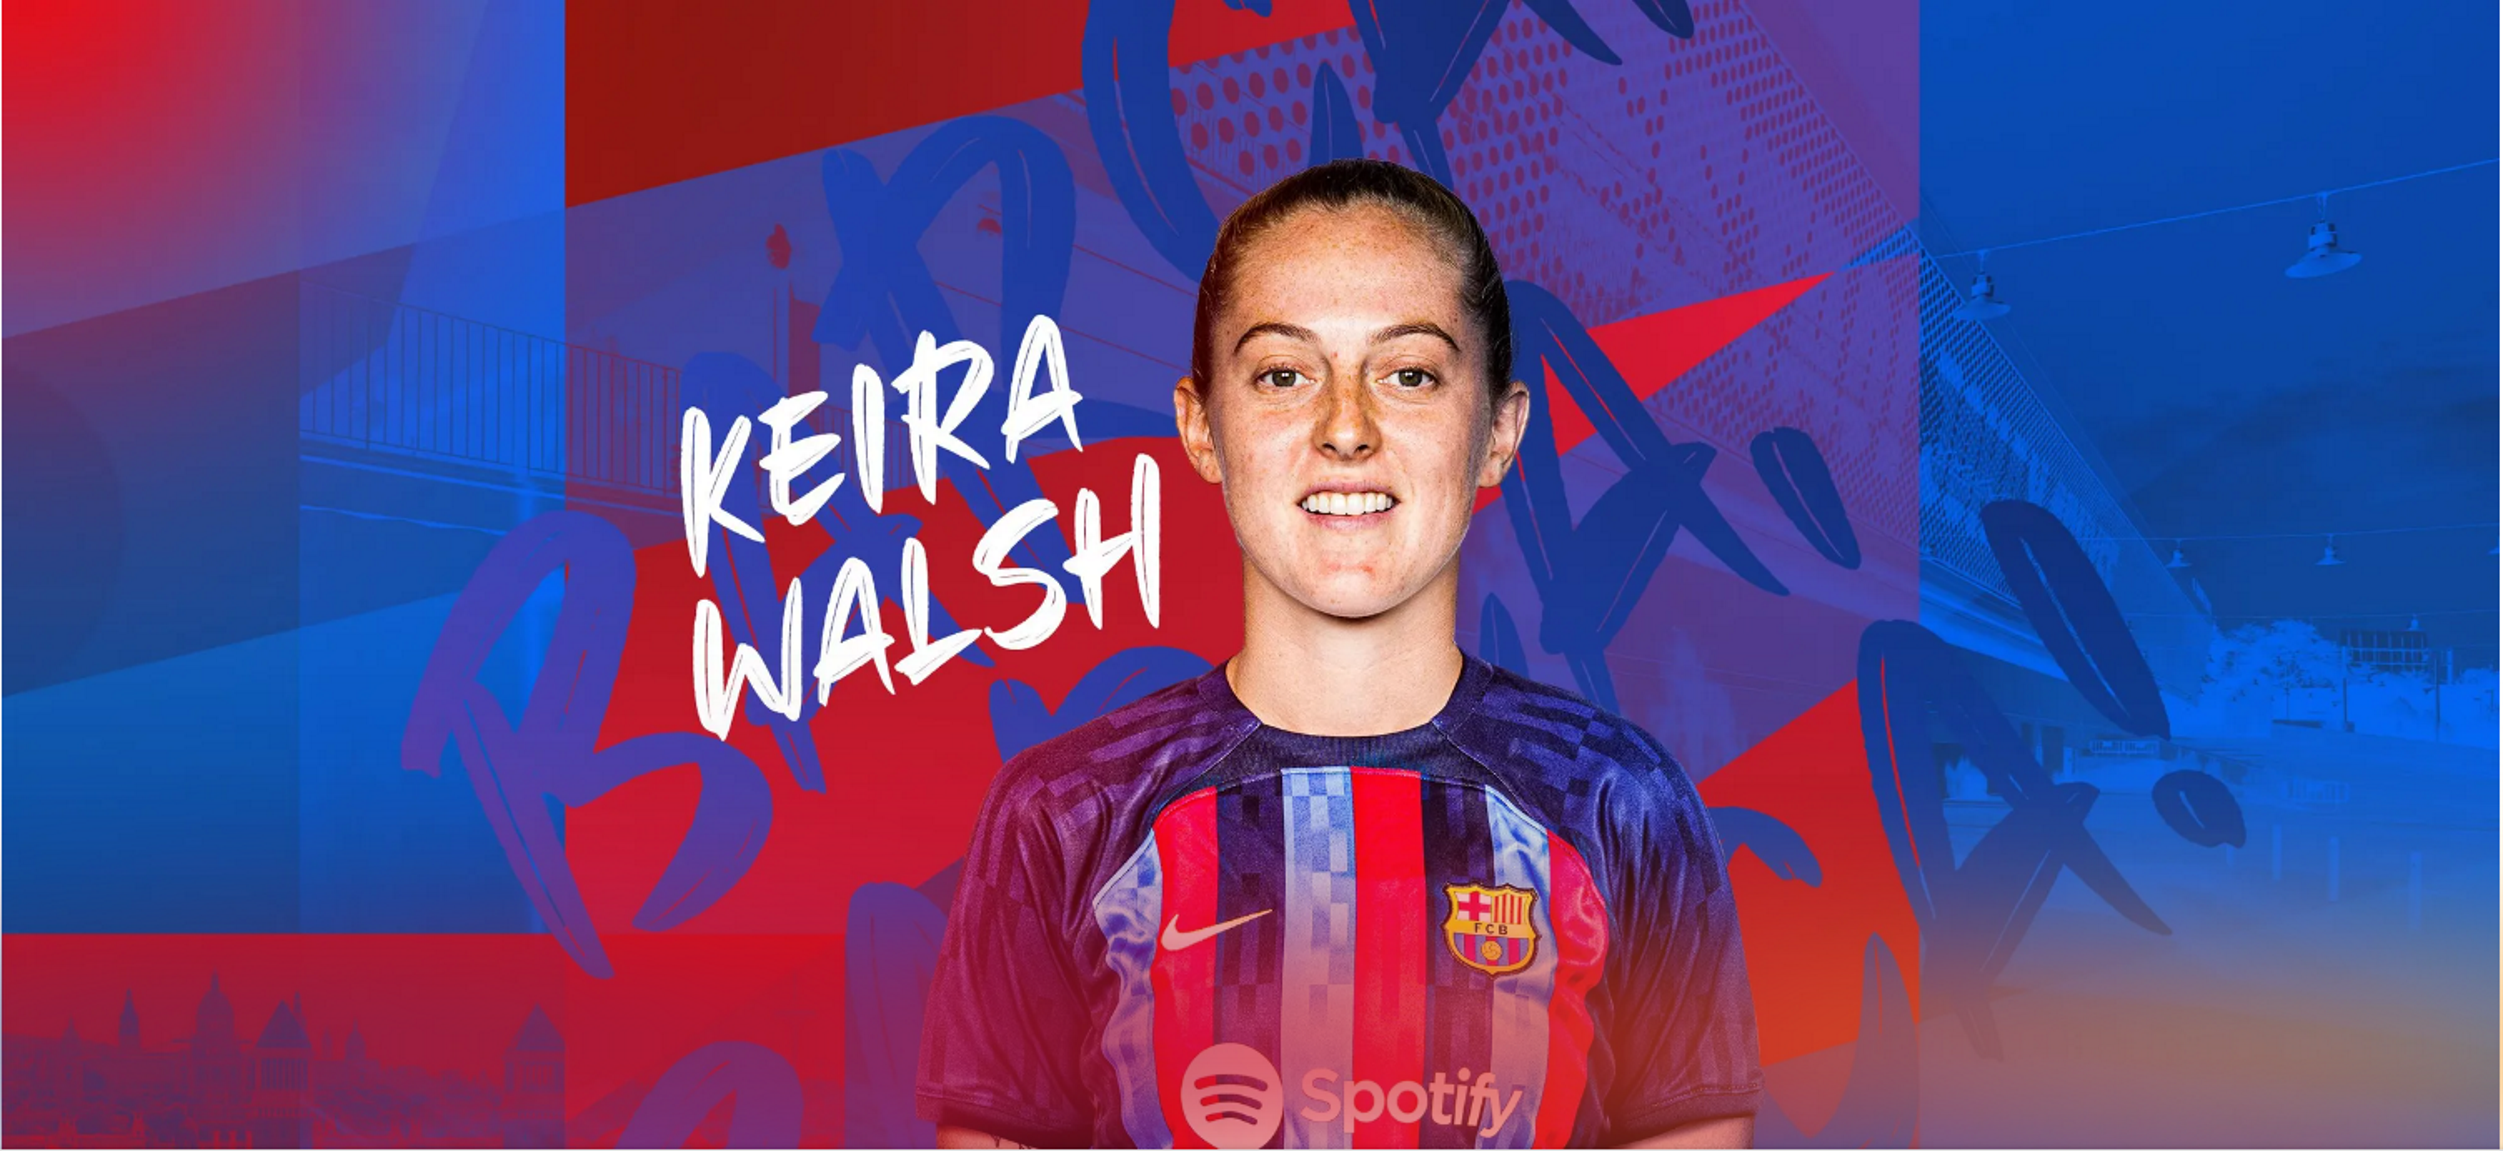 Keira Walsh, refuerzo de lujo para el Barça y fichaje más caro de la historia del fútbol femenino